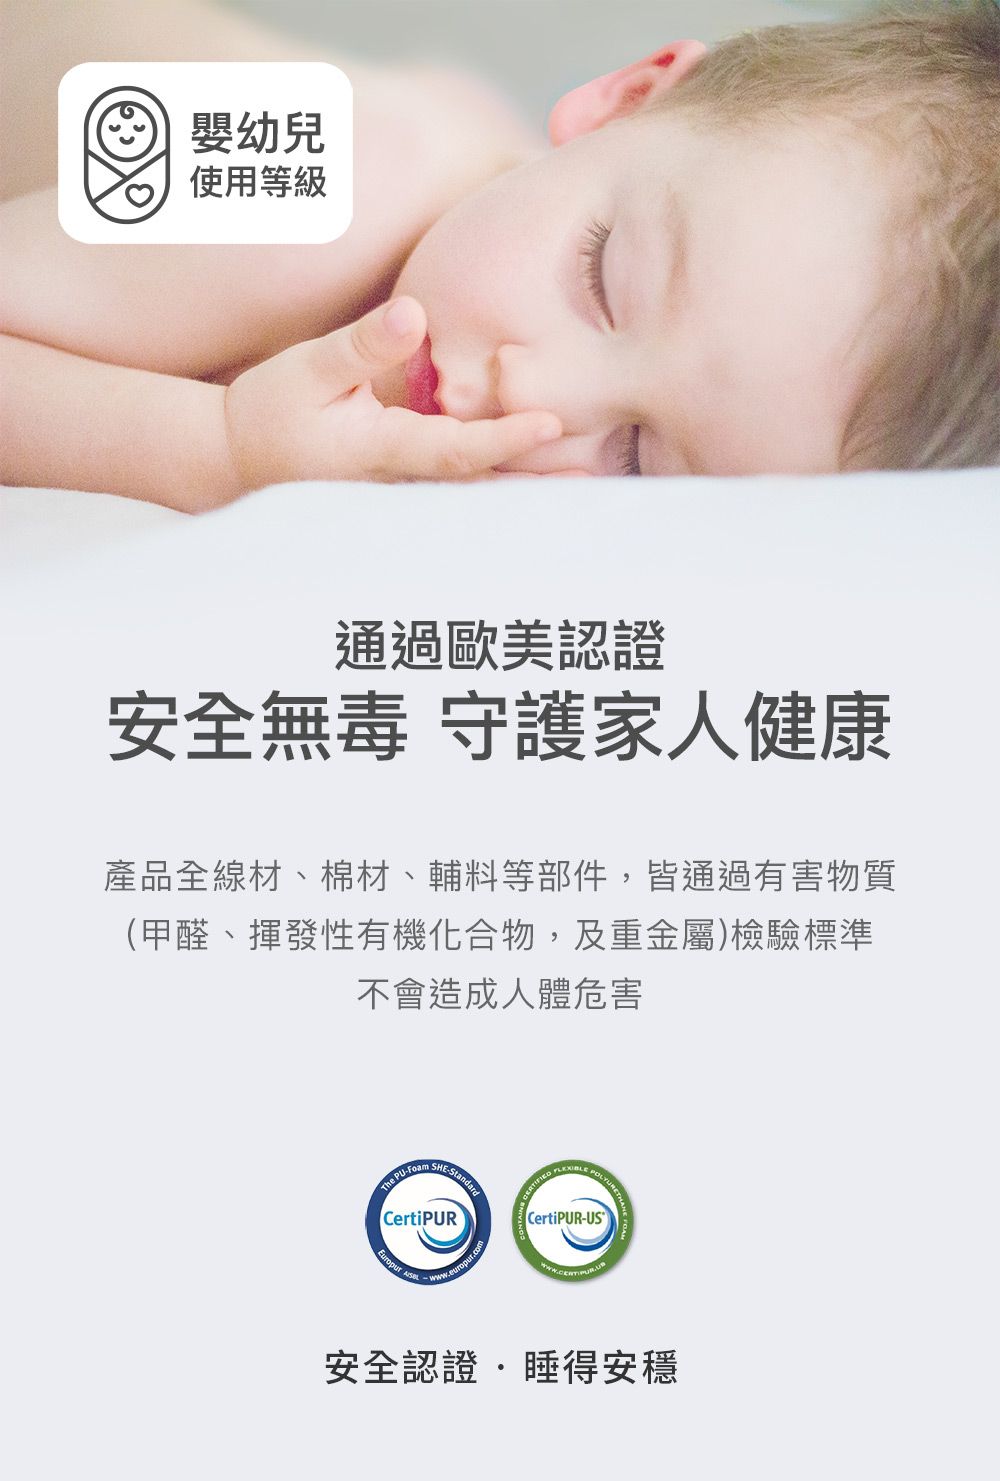 嬰幼兒使用等級通過歐美認證安全無毒 守護家人健康產品全線材、棉材、輔料等部件,皆通過有害物質(甲醛、揮發性有機化合物,及重金屬)檢驗標準不會造成人體危害The PUFoam -CertiPUR   CertiPUR-US安全認證睡得安穩